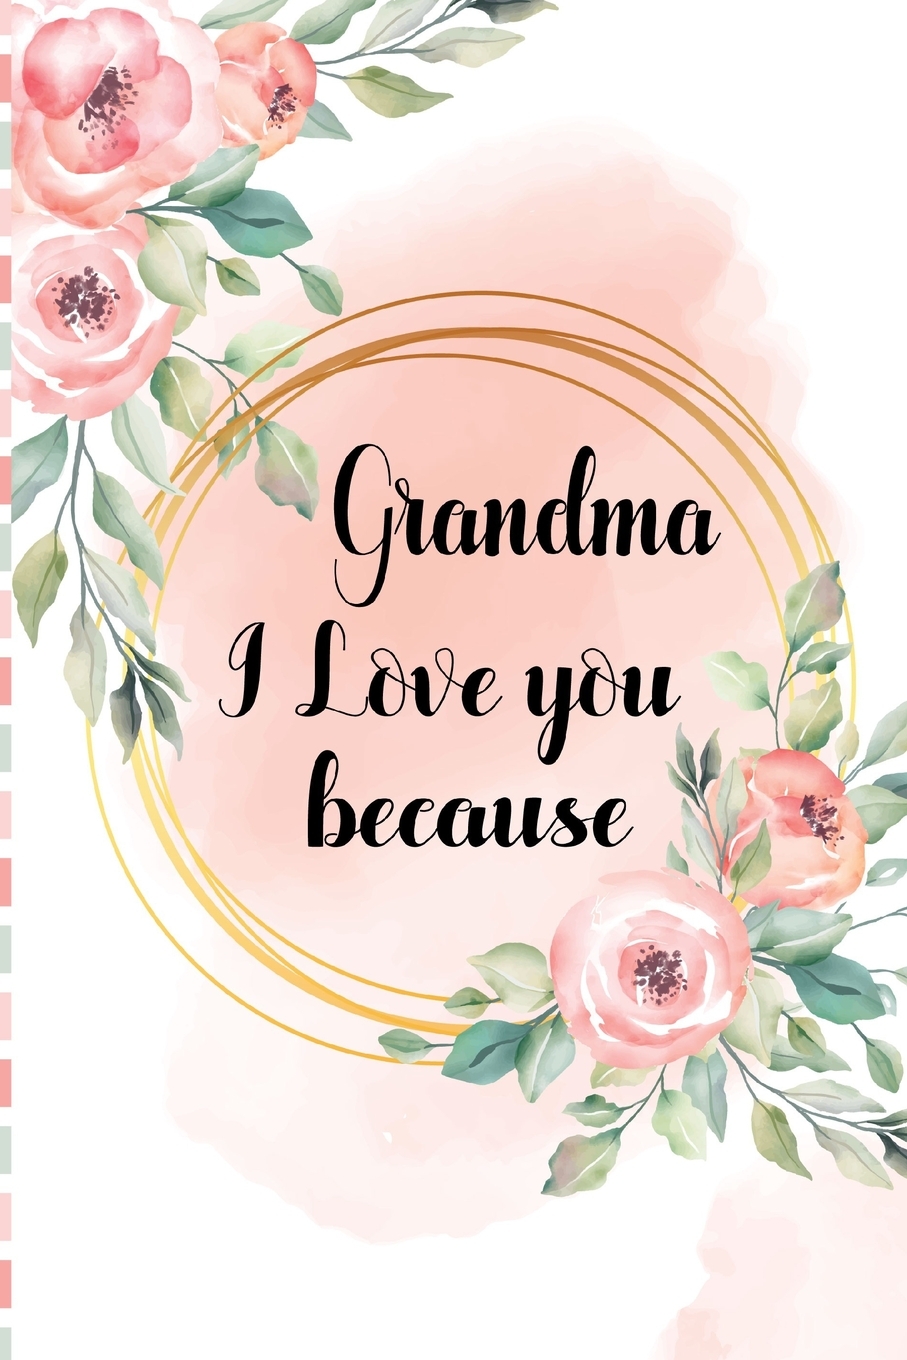 Một món quà của bà nội của bạn là một niềm vui rất lớn nếu bạn biết cách đánh giá nó. Bạn đang cần tìm kiếm một món quà đặc biệt cho bà nội của mình? Hãy đến với hình ảnh liên quan đến quà tặng của bà nội để được cập nhật về những món quà đáng yêu và ý nghĩa nhất.